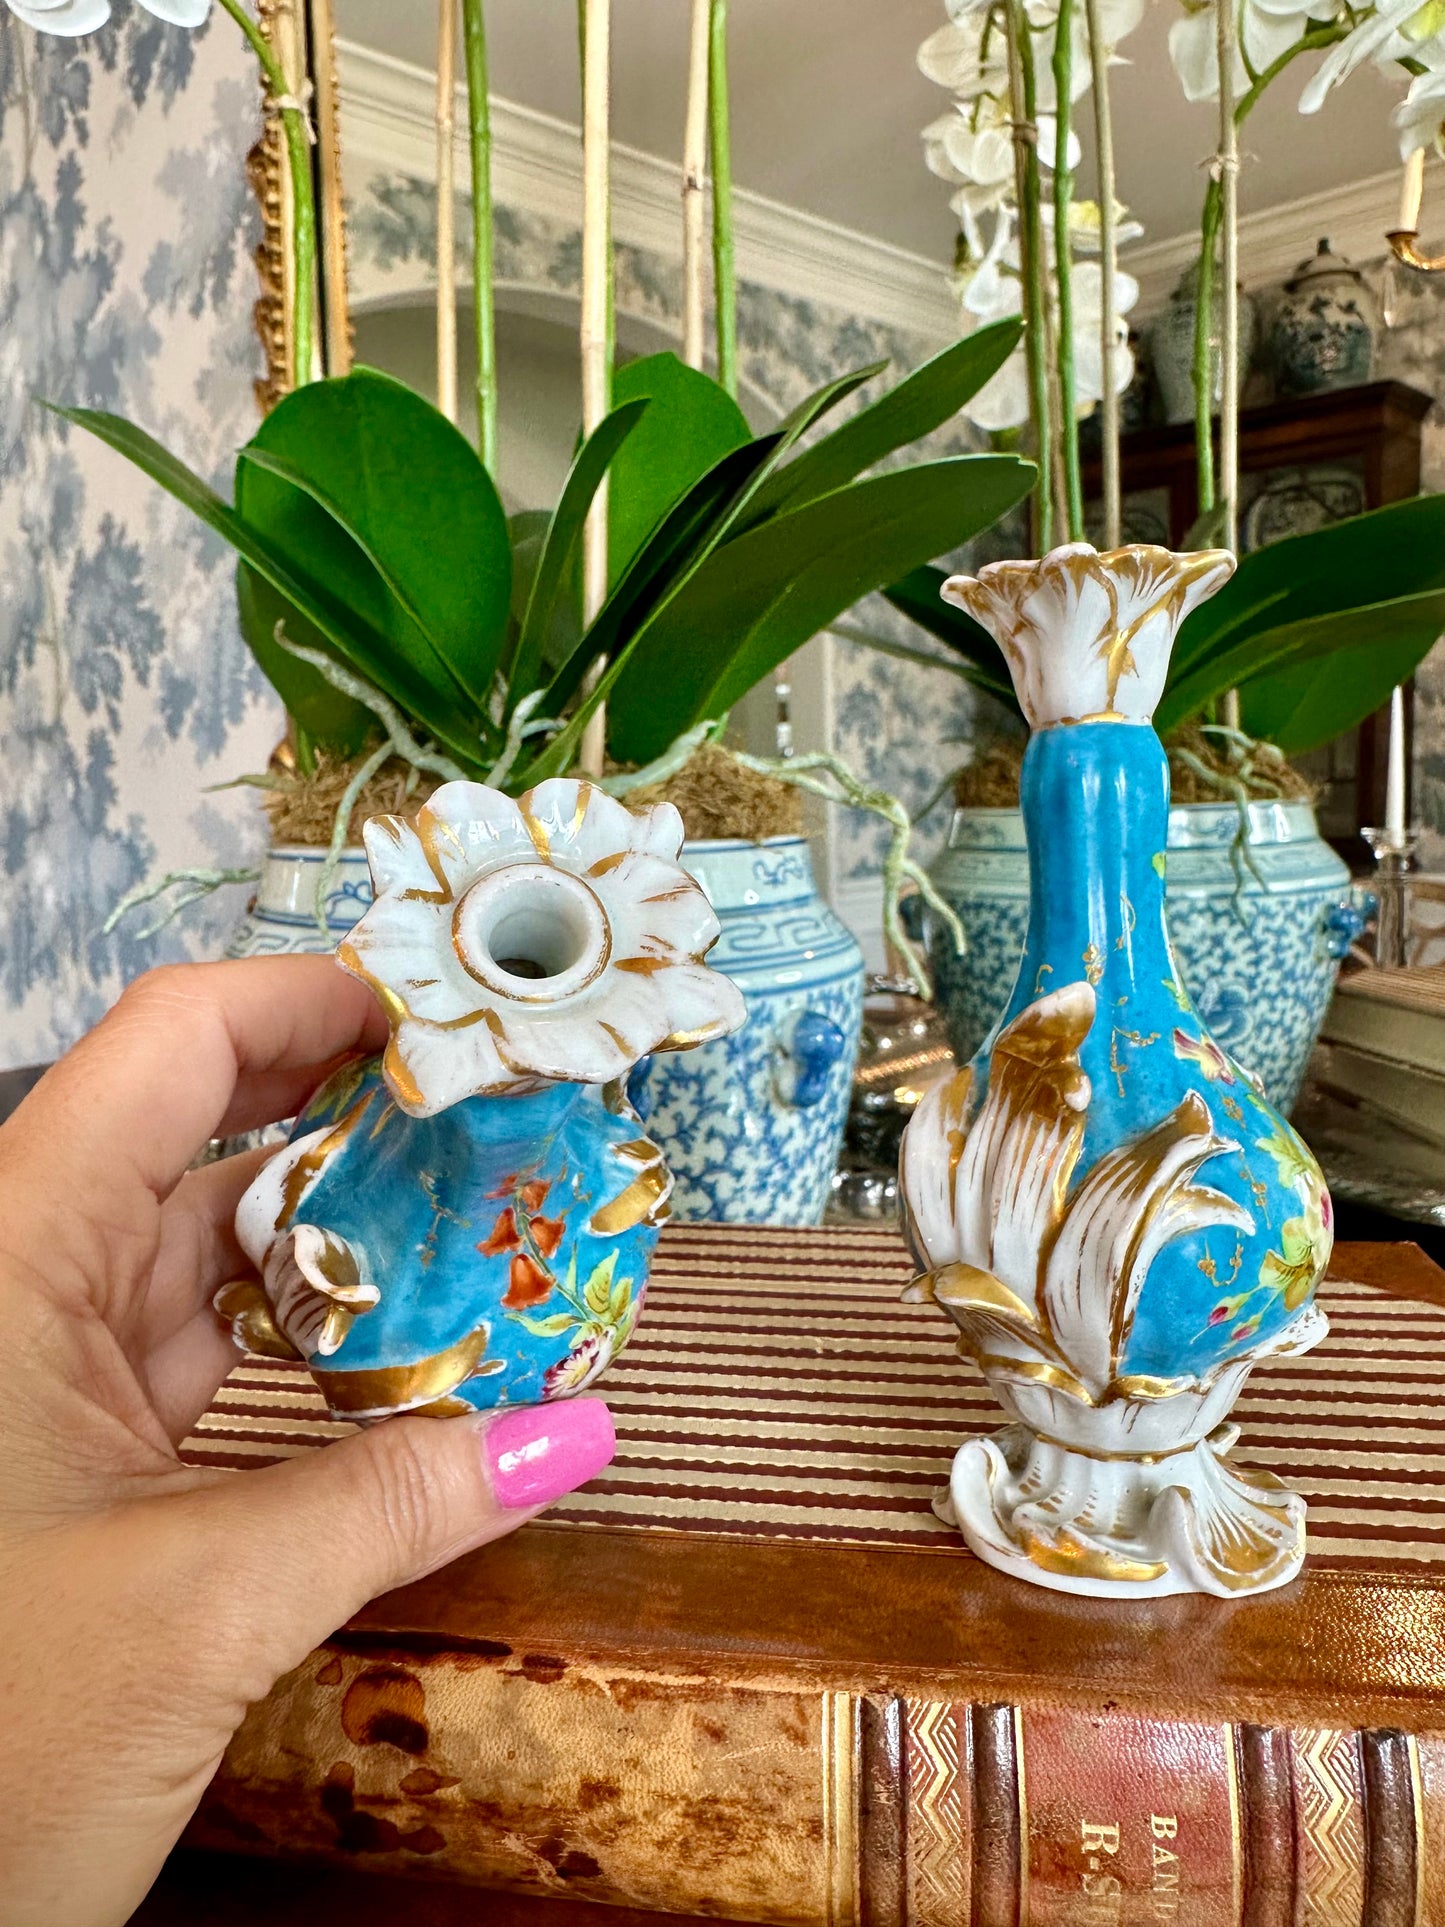 Beautiful Pair of 19thc Paris Porcelain Victorian Miniature Garniture Vases